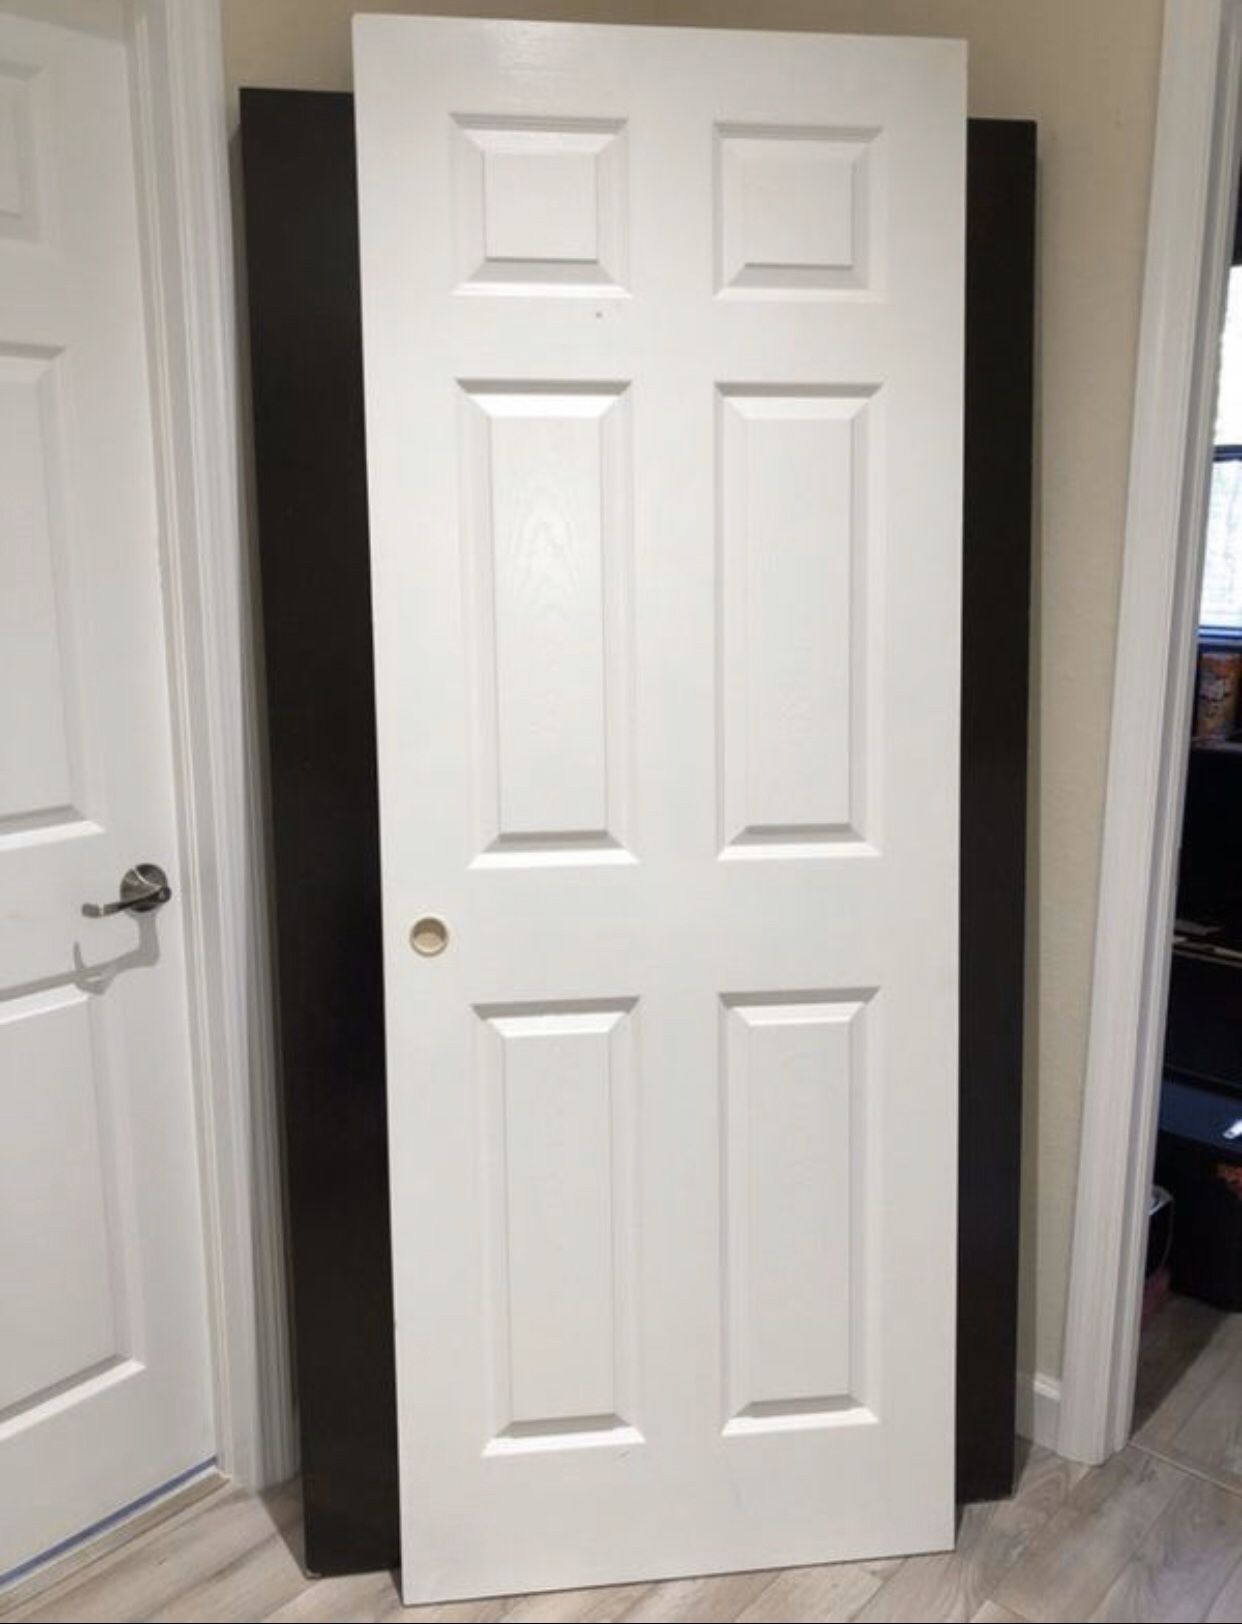 4 Standard size doors